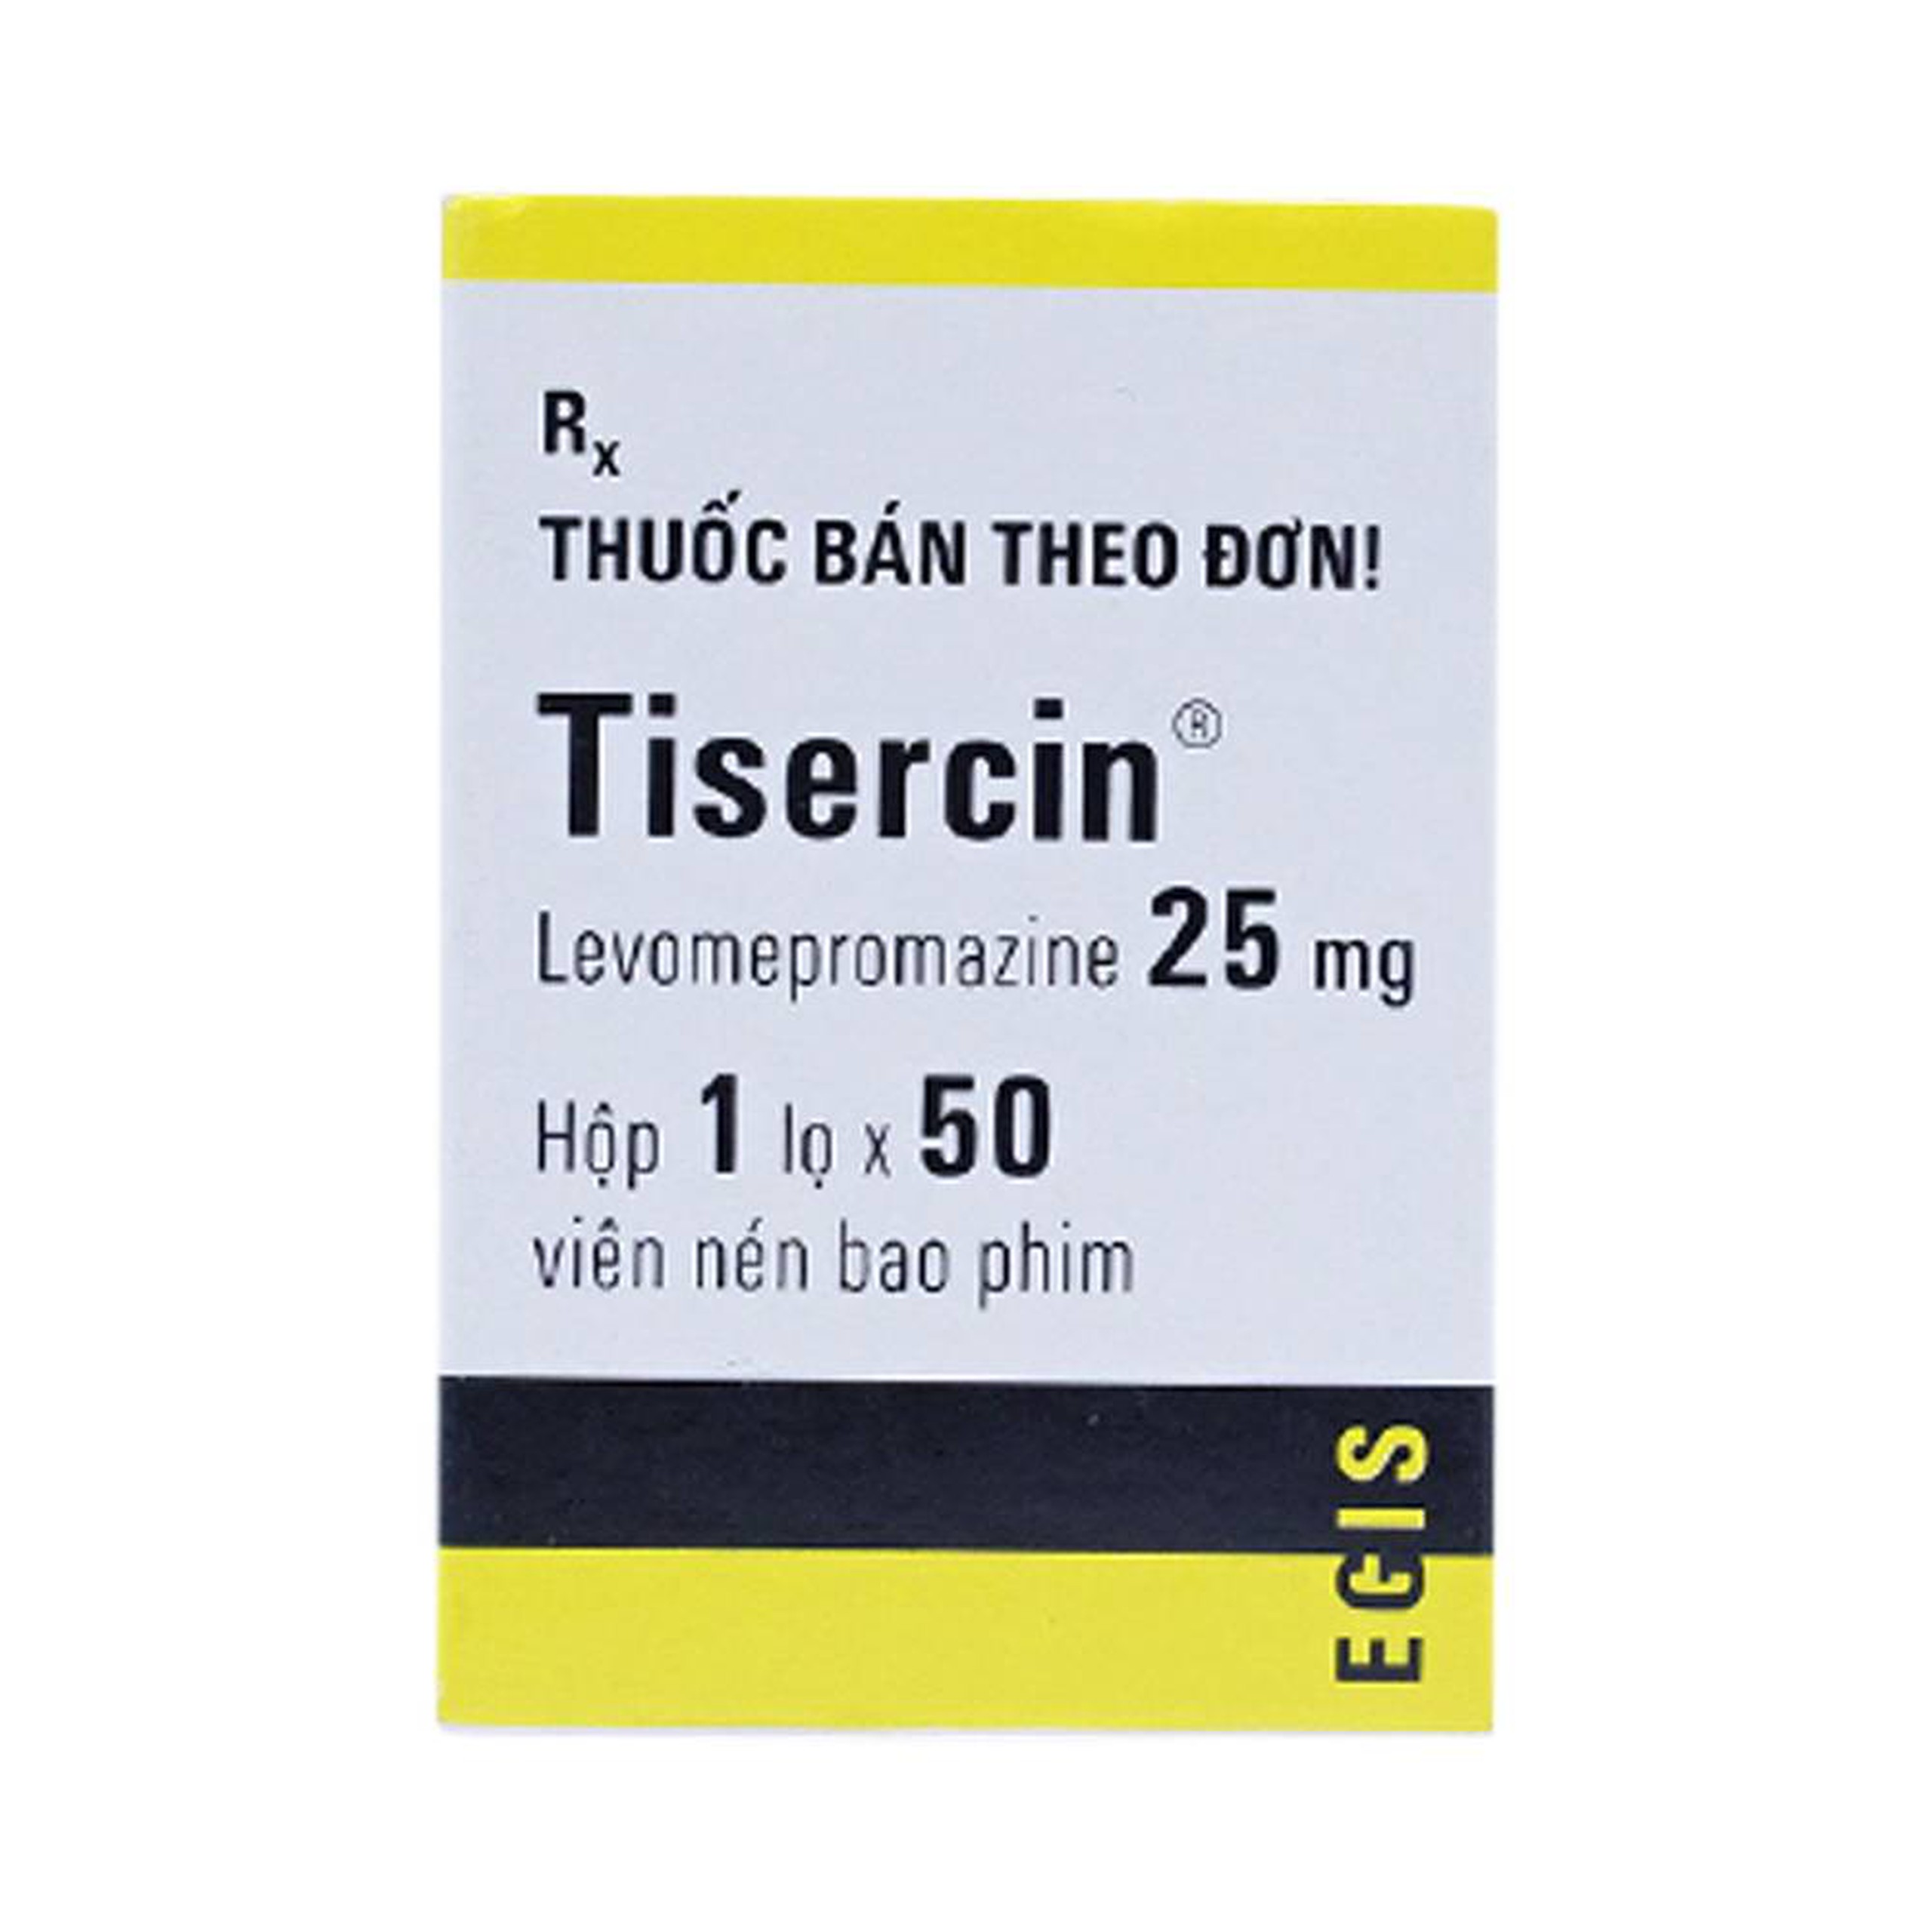 Thuốc Tisercin 25mg Egis điều trị loạn thận (1 lọ x 50 viên)